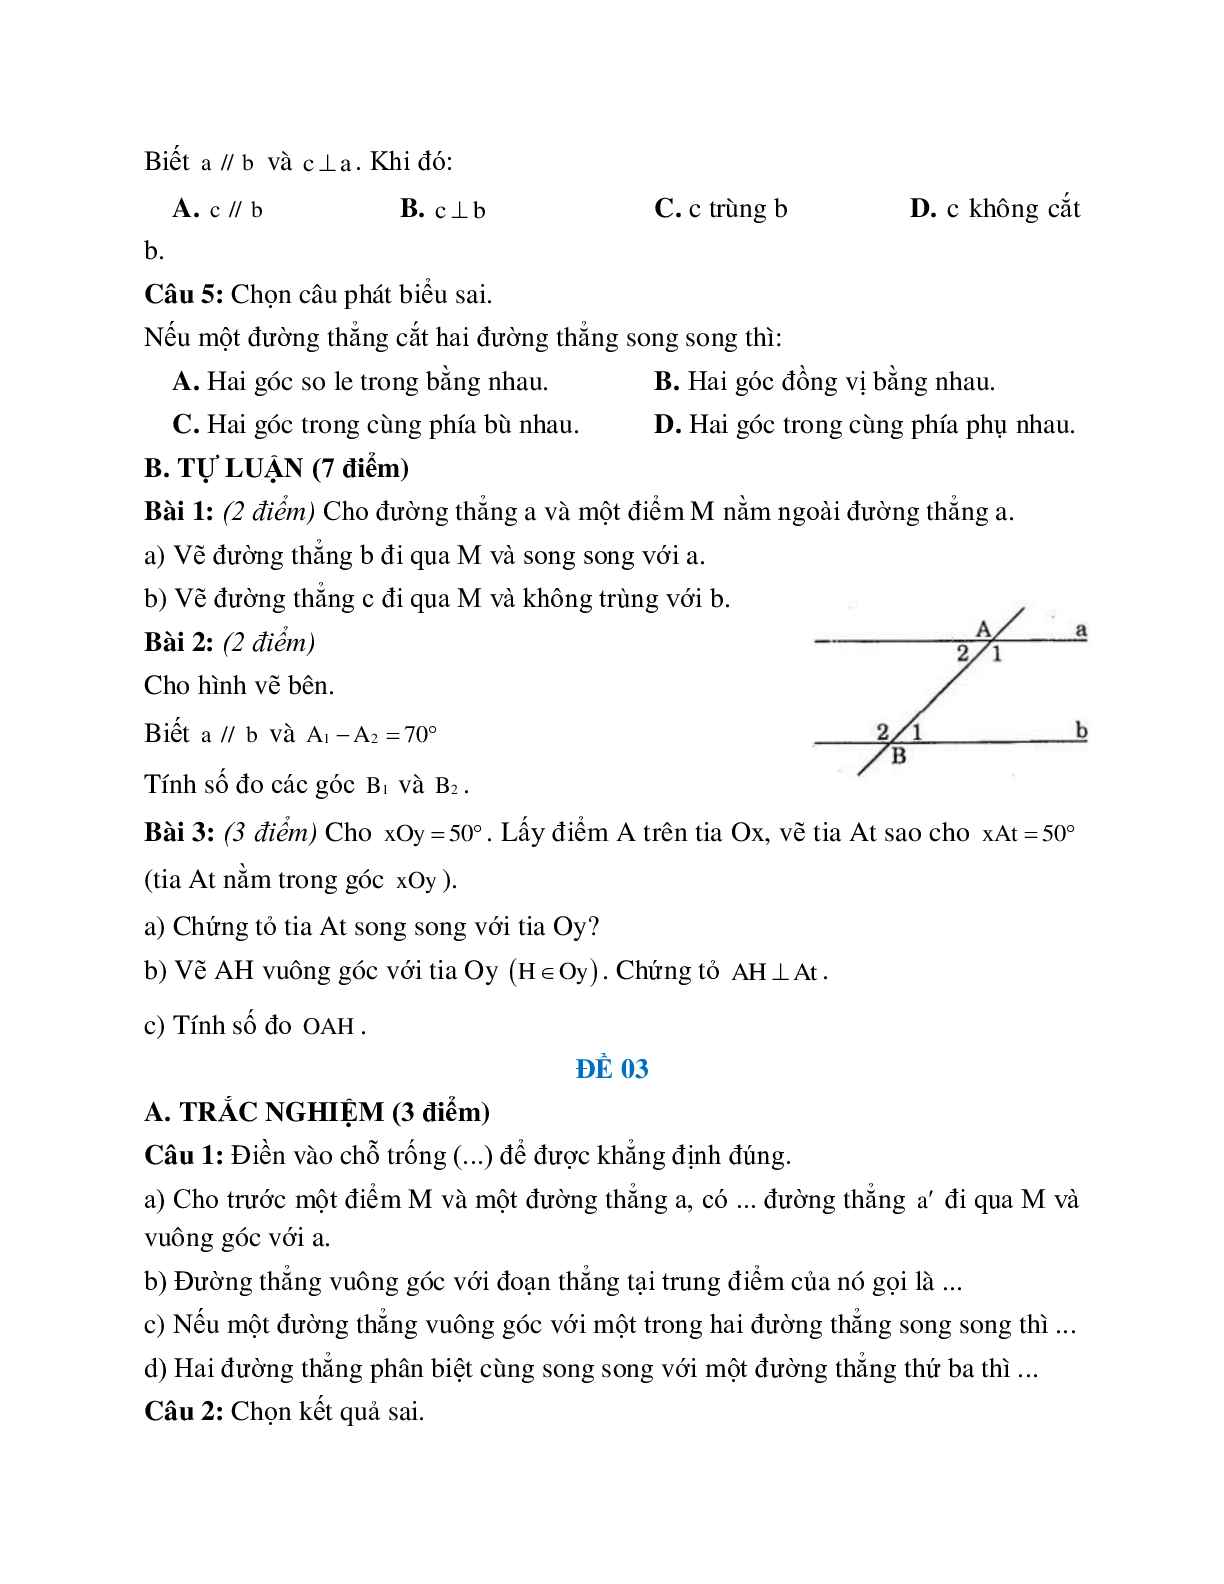 Đề ôn tập đường thẳng vuông góc, đường thẳng song song (5 đề) (trang 3)